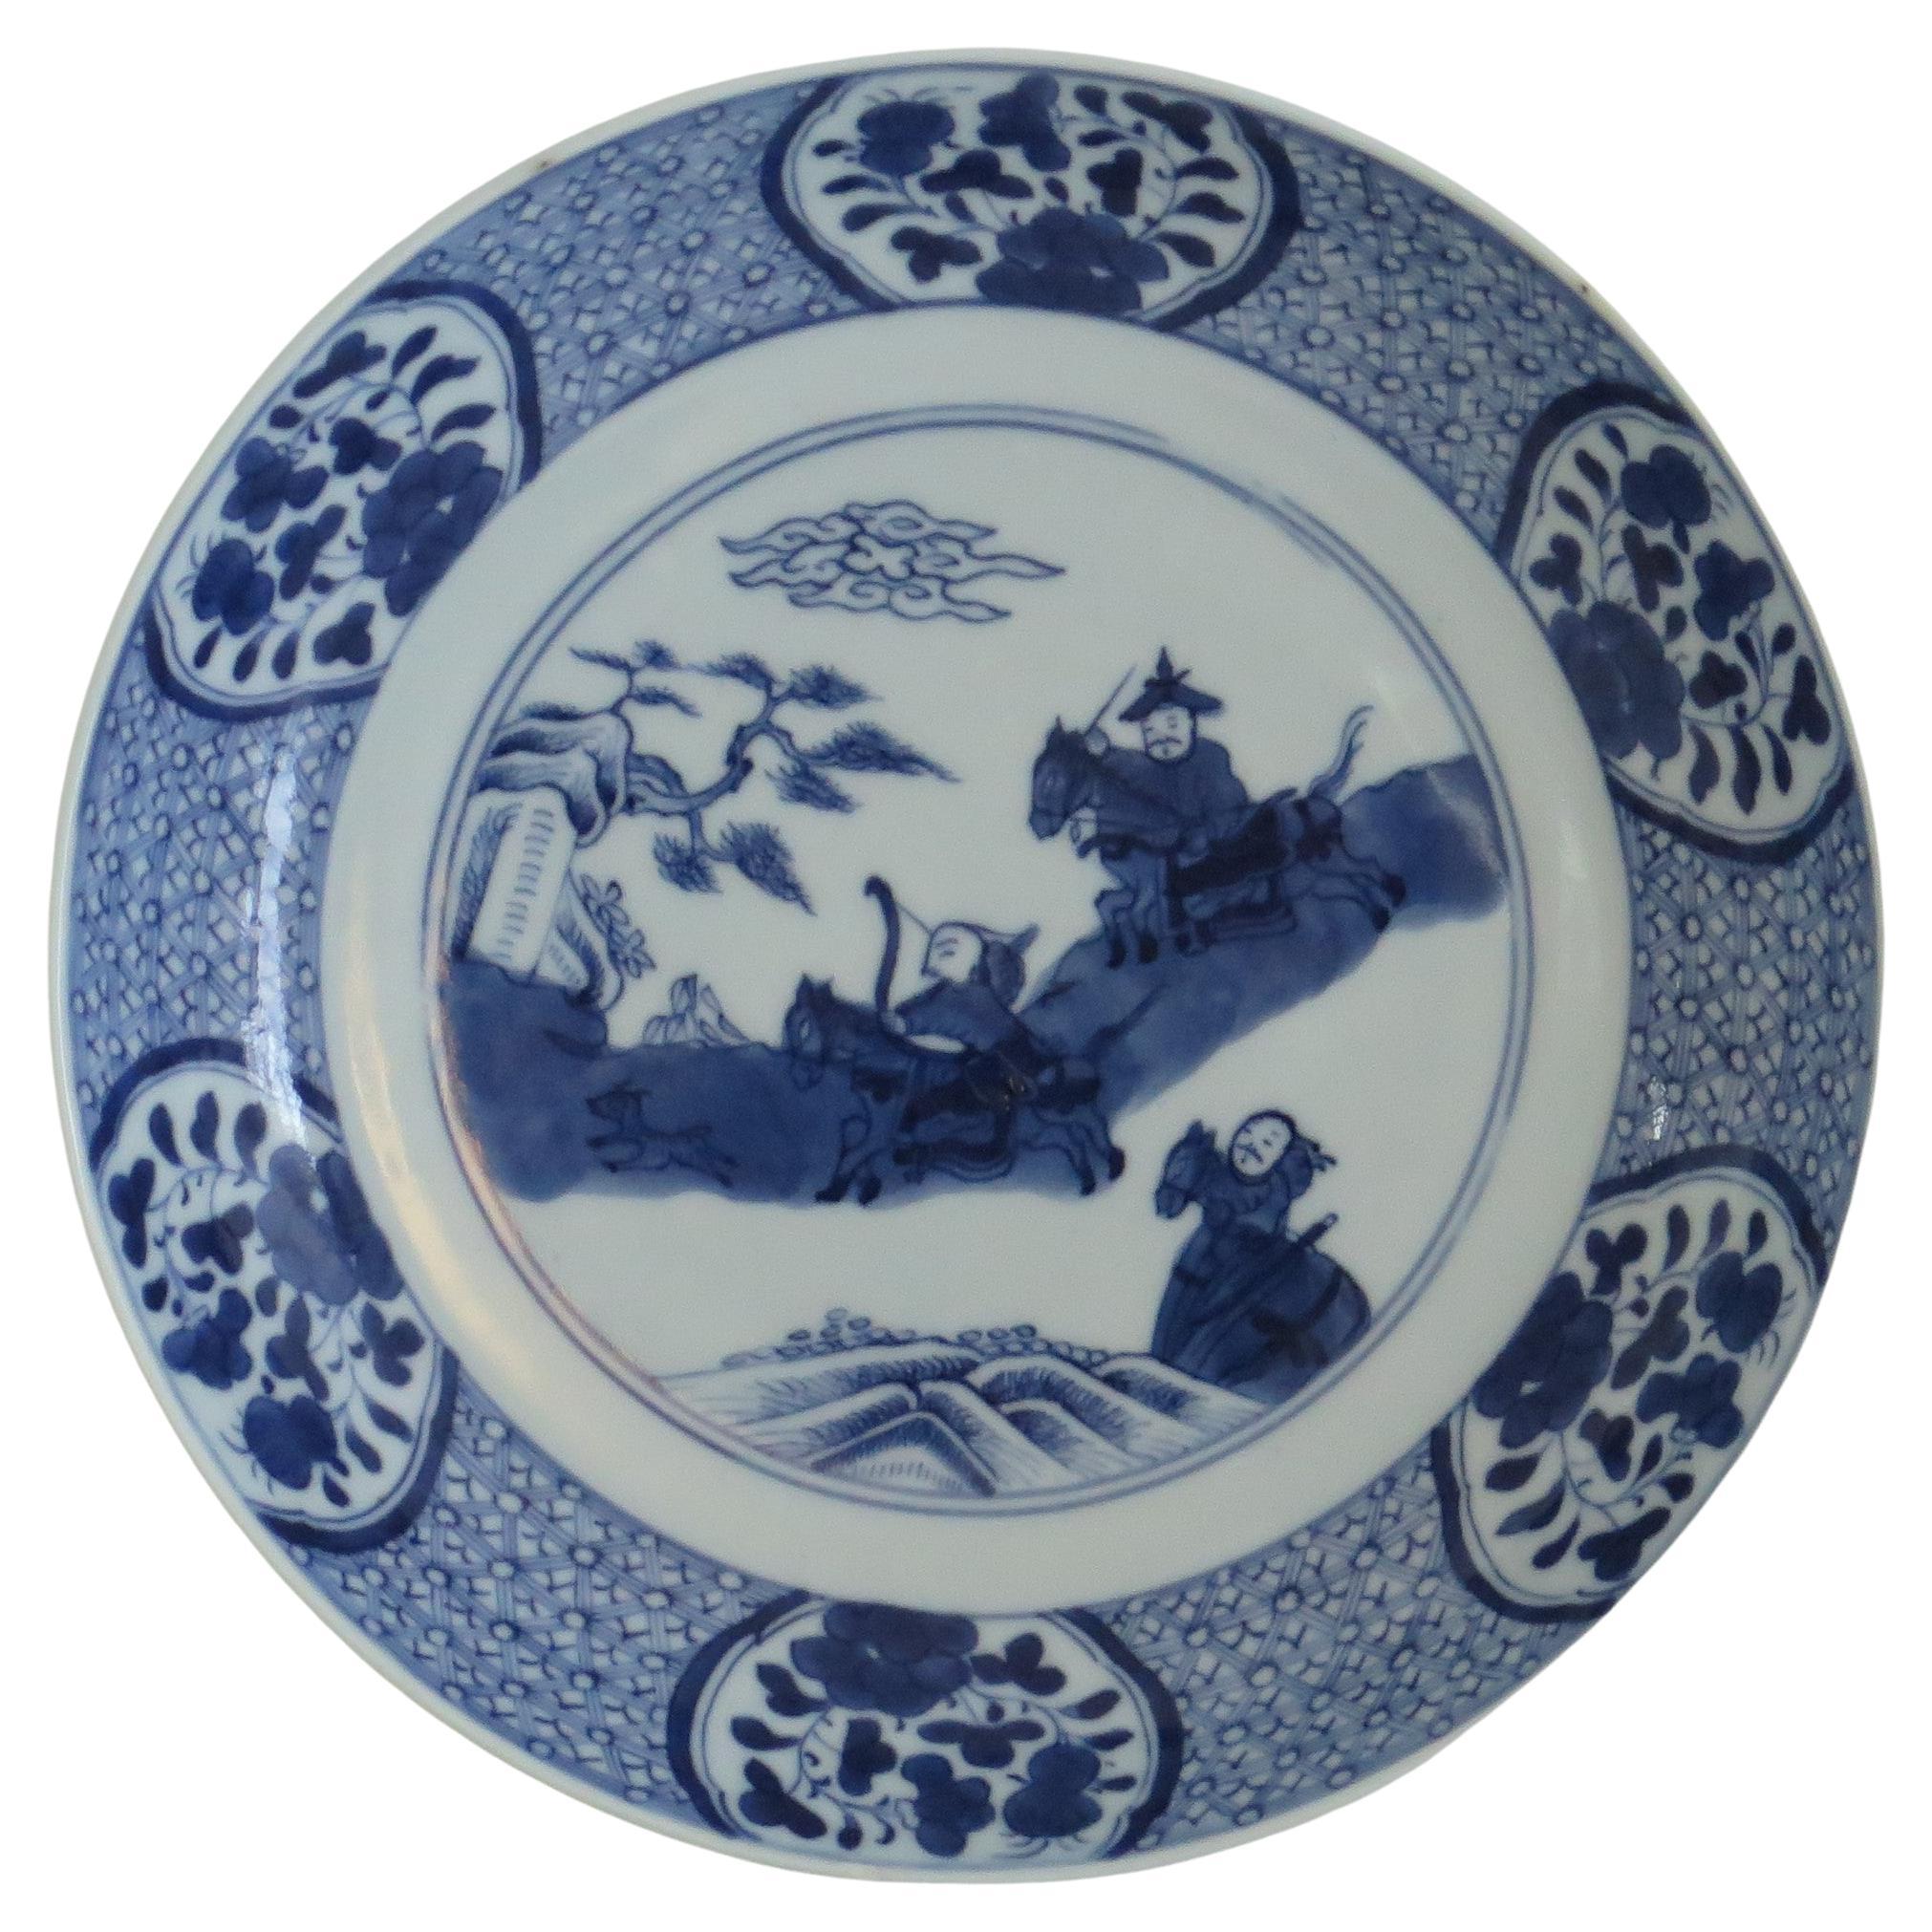 Dies ist ein sehr schön von Hand bemaltes chinesisches Porzellan blau und weiß Schüssel oder Teller aus dem 18. Jahrhundert Qing-Dynastie, möglicherweise zurück zu den Kangxi-Periode ( 1662-1722). 

Es handelt sich um eine gut getöpferte Schale